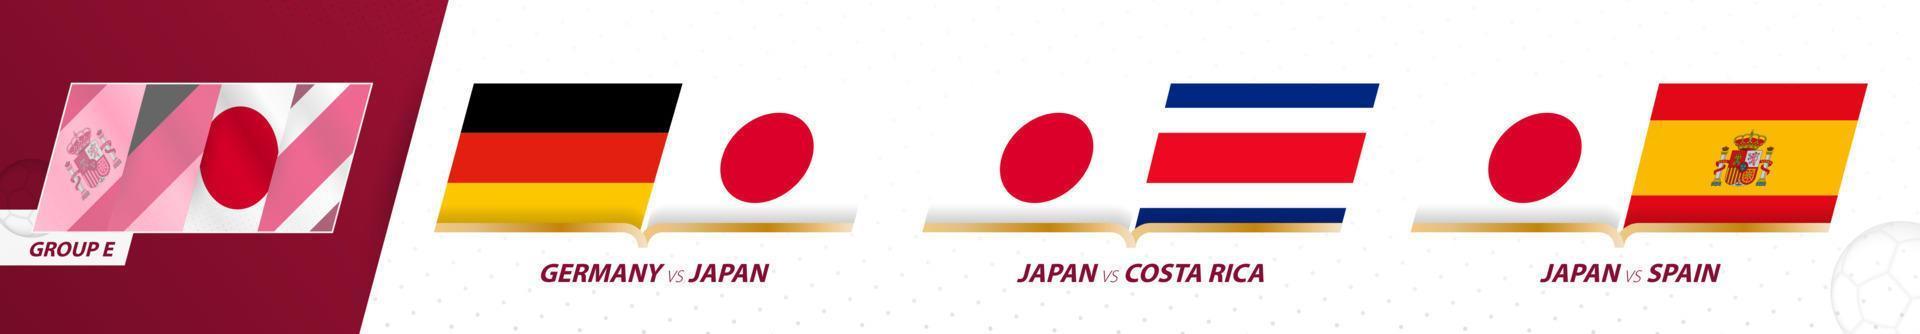 Juegos de la selección de fútbol de Japón en el grupo e del torneo internacional de fútbol 2022. vector